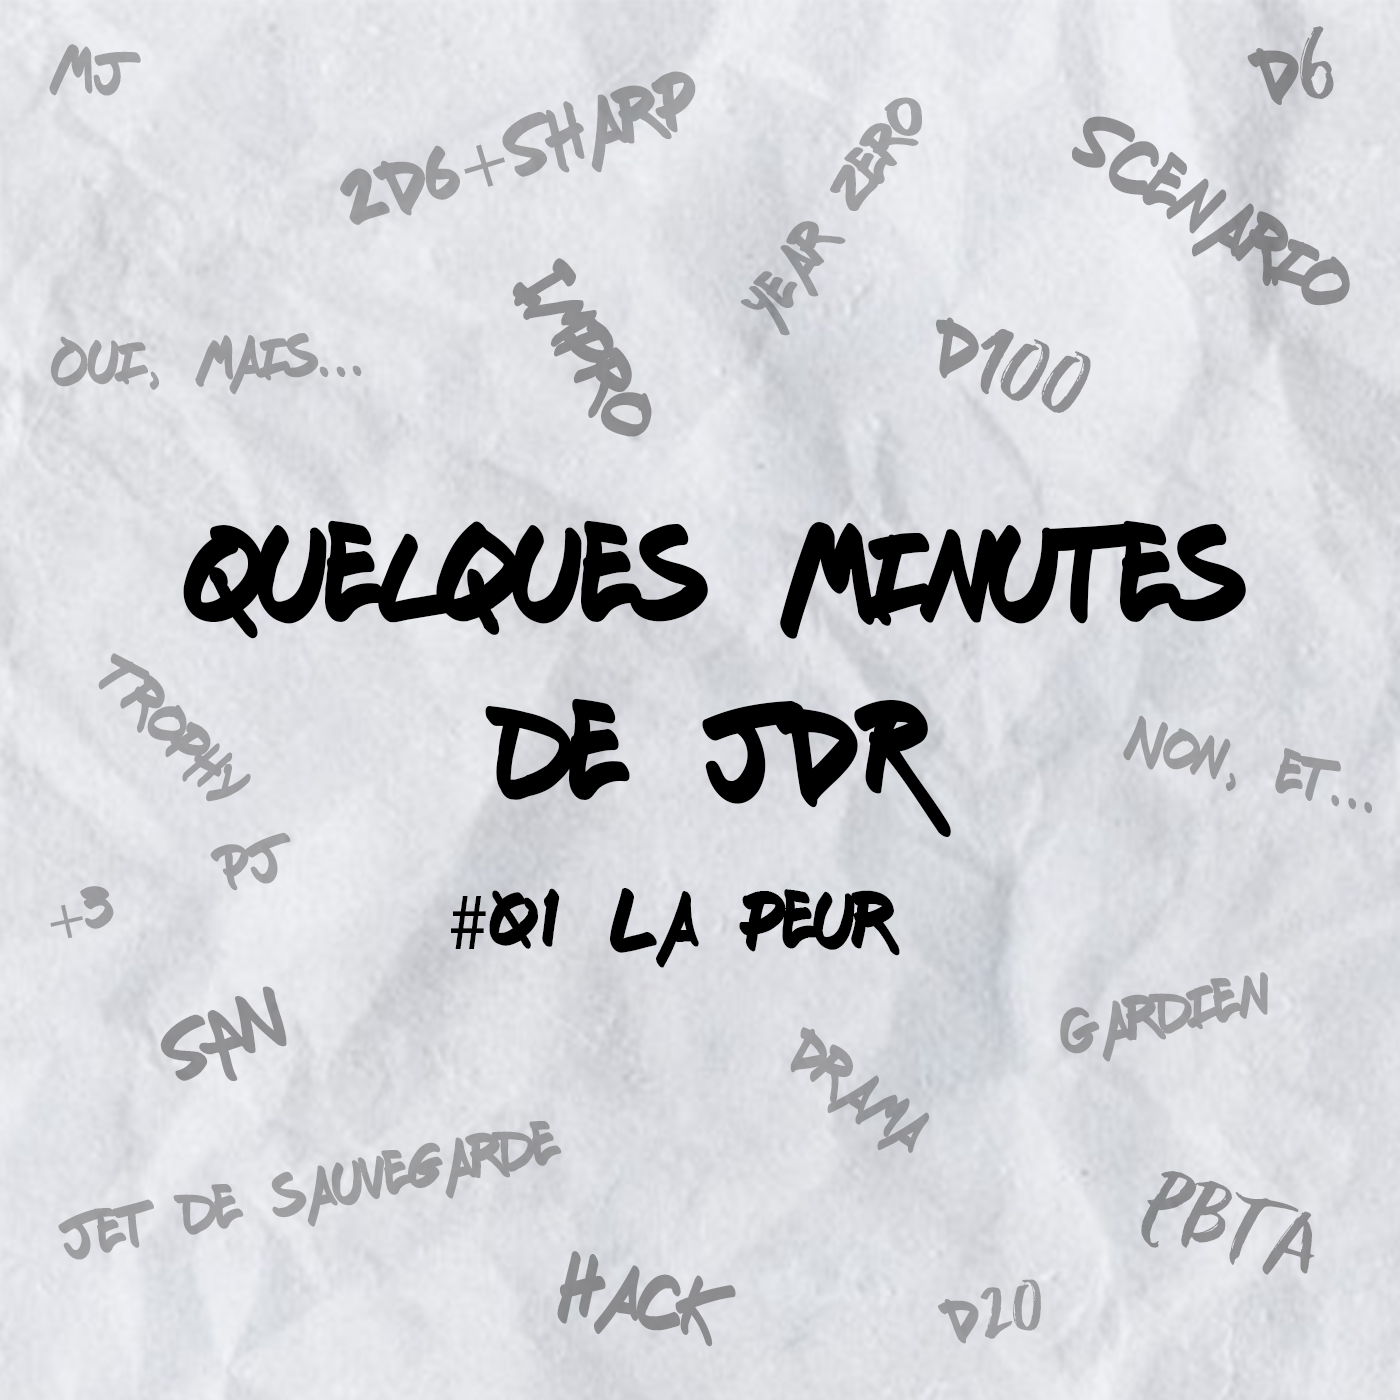 Quelques minutes de JDR – #01 La Peur